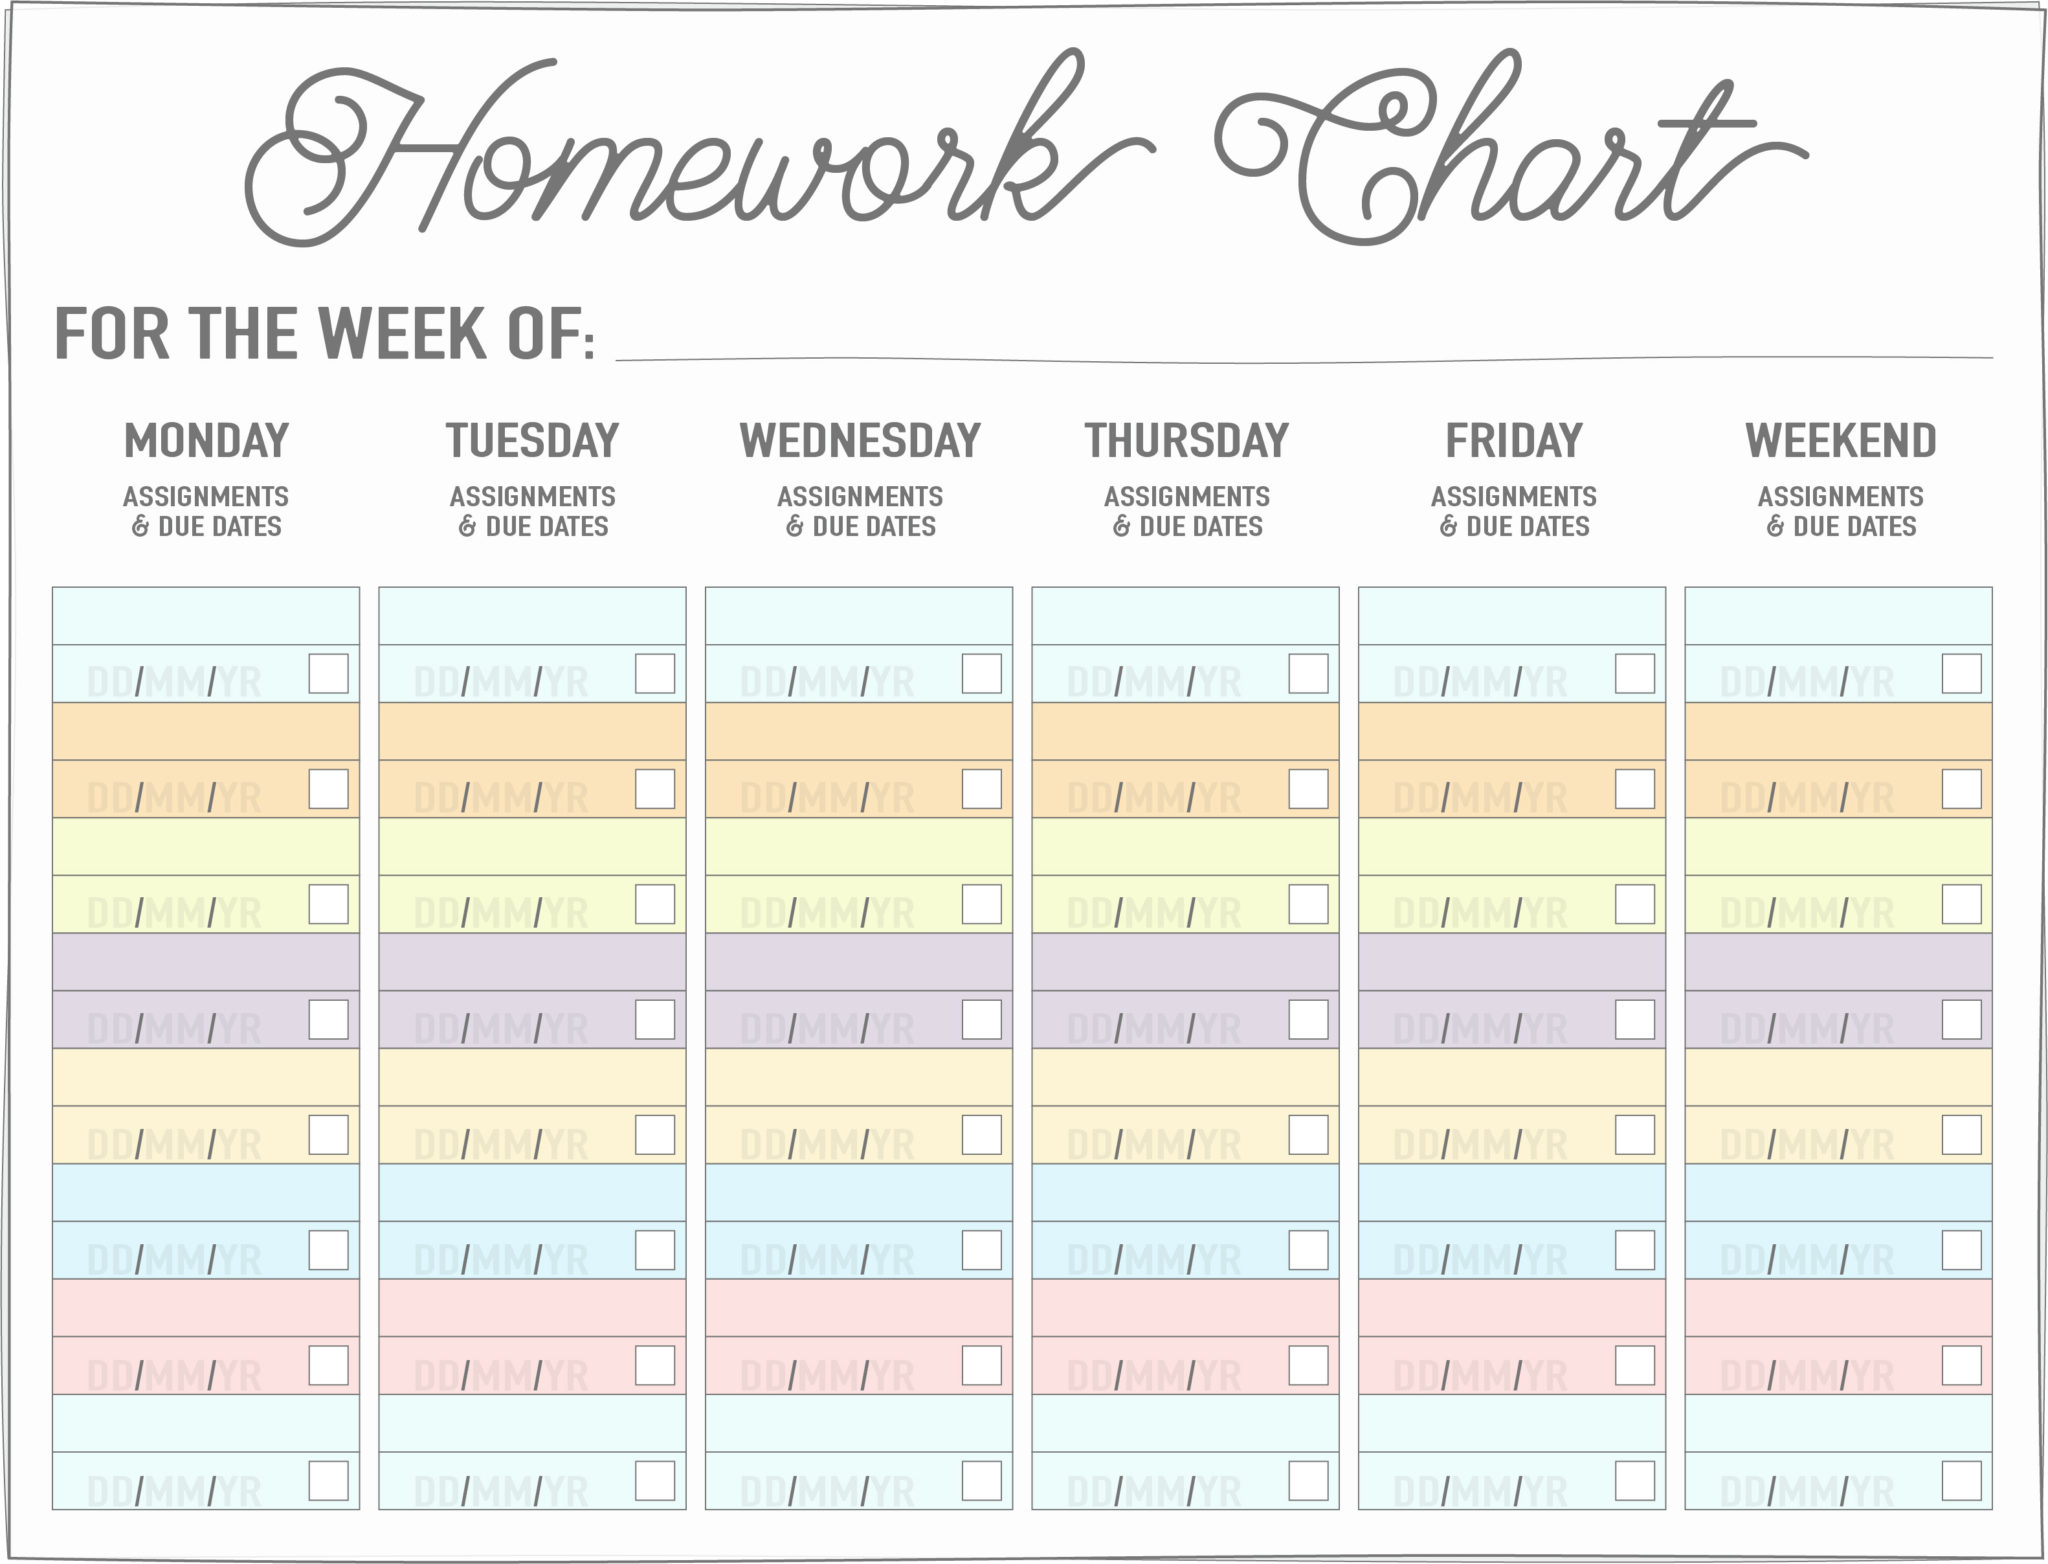 homework chart printable